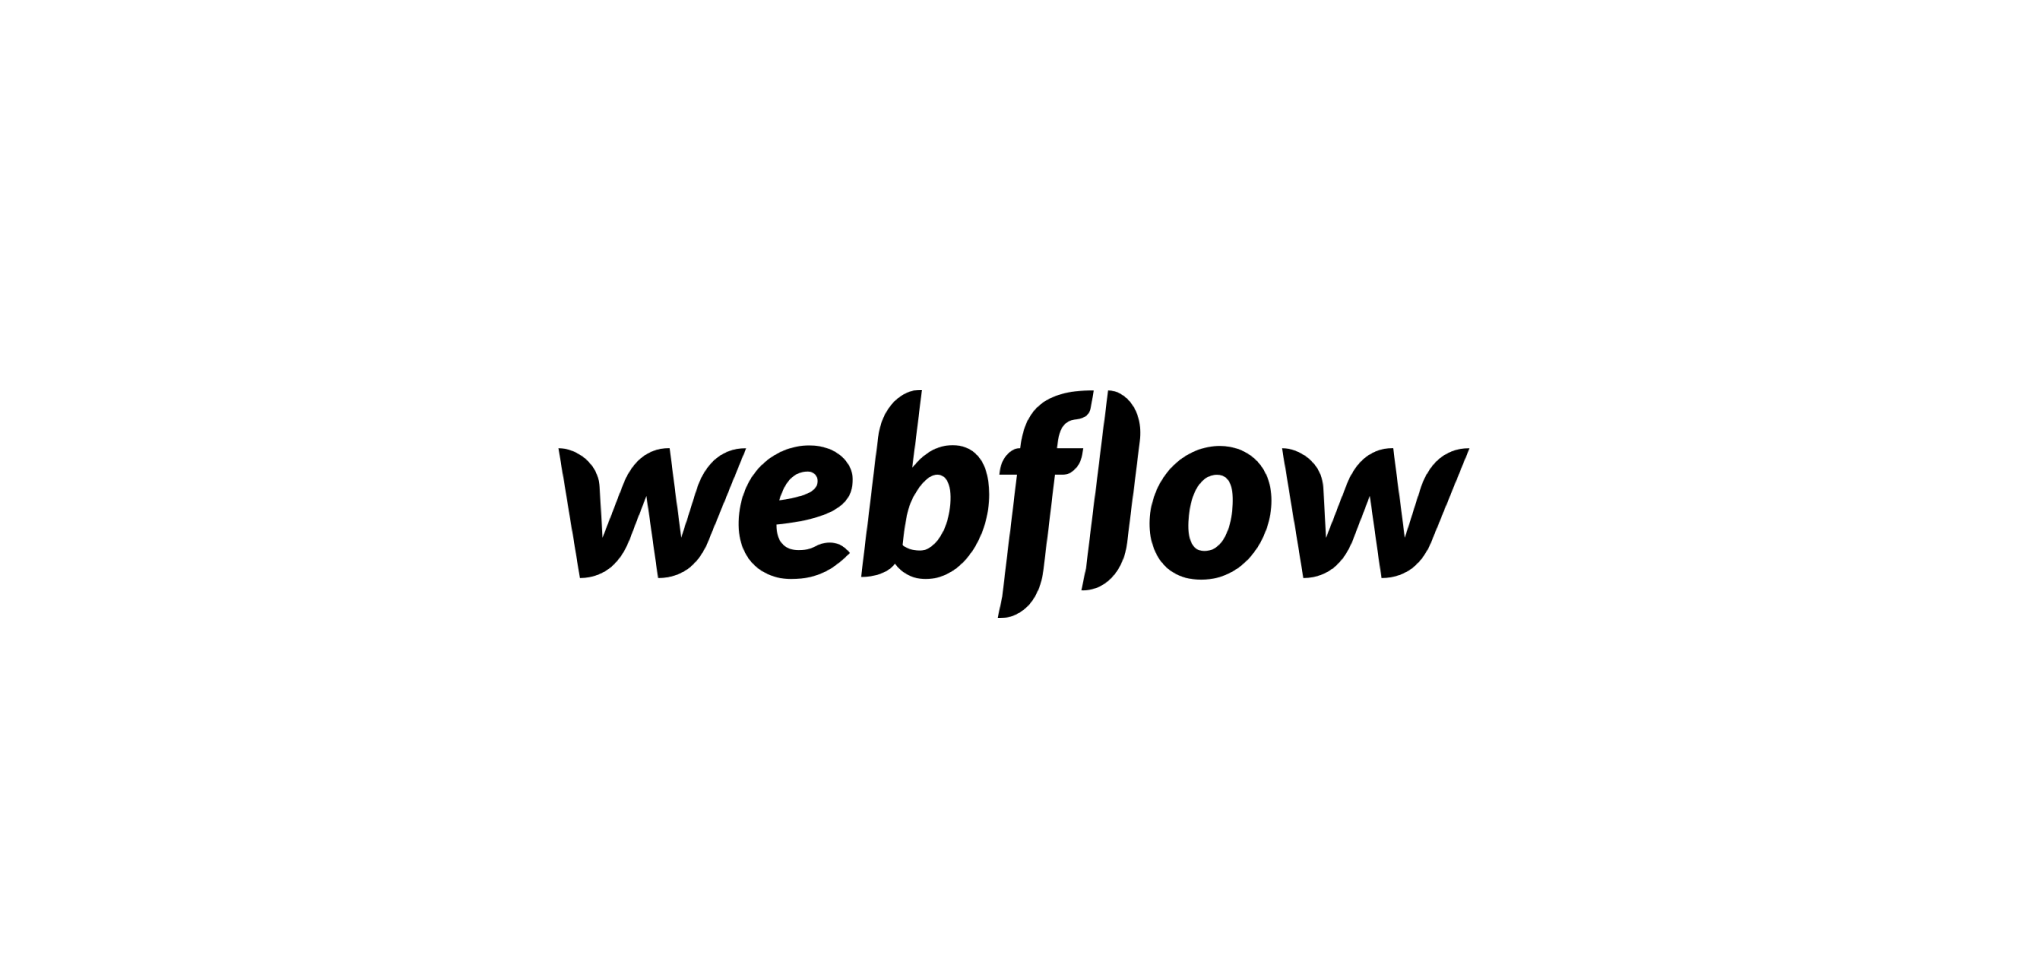 The Webflow logo